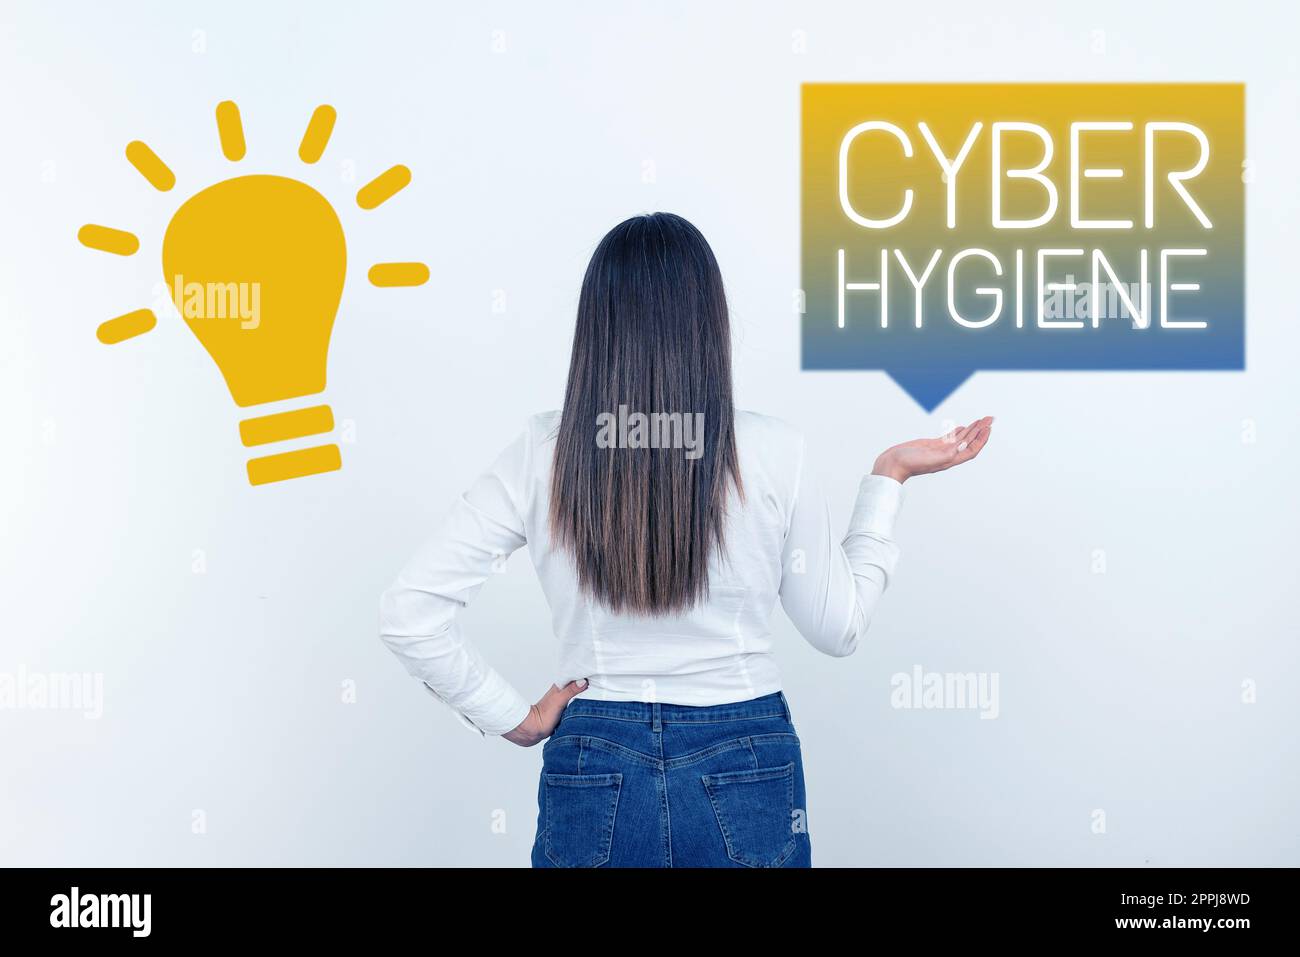 Légende présentant Cyber Hygiene. Mot pour les mesures que les utilisateurs d'ordinateur prennent pour améliorer leur cyber-sécurité Banque D'Images